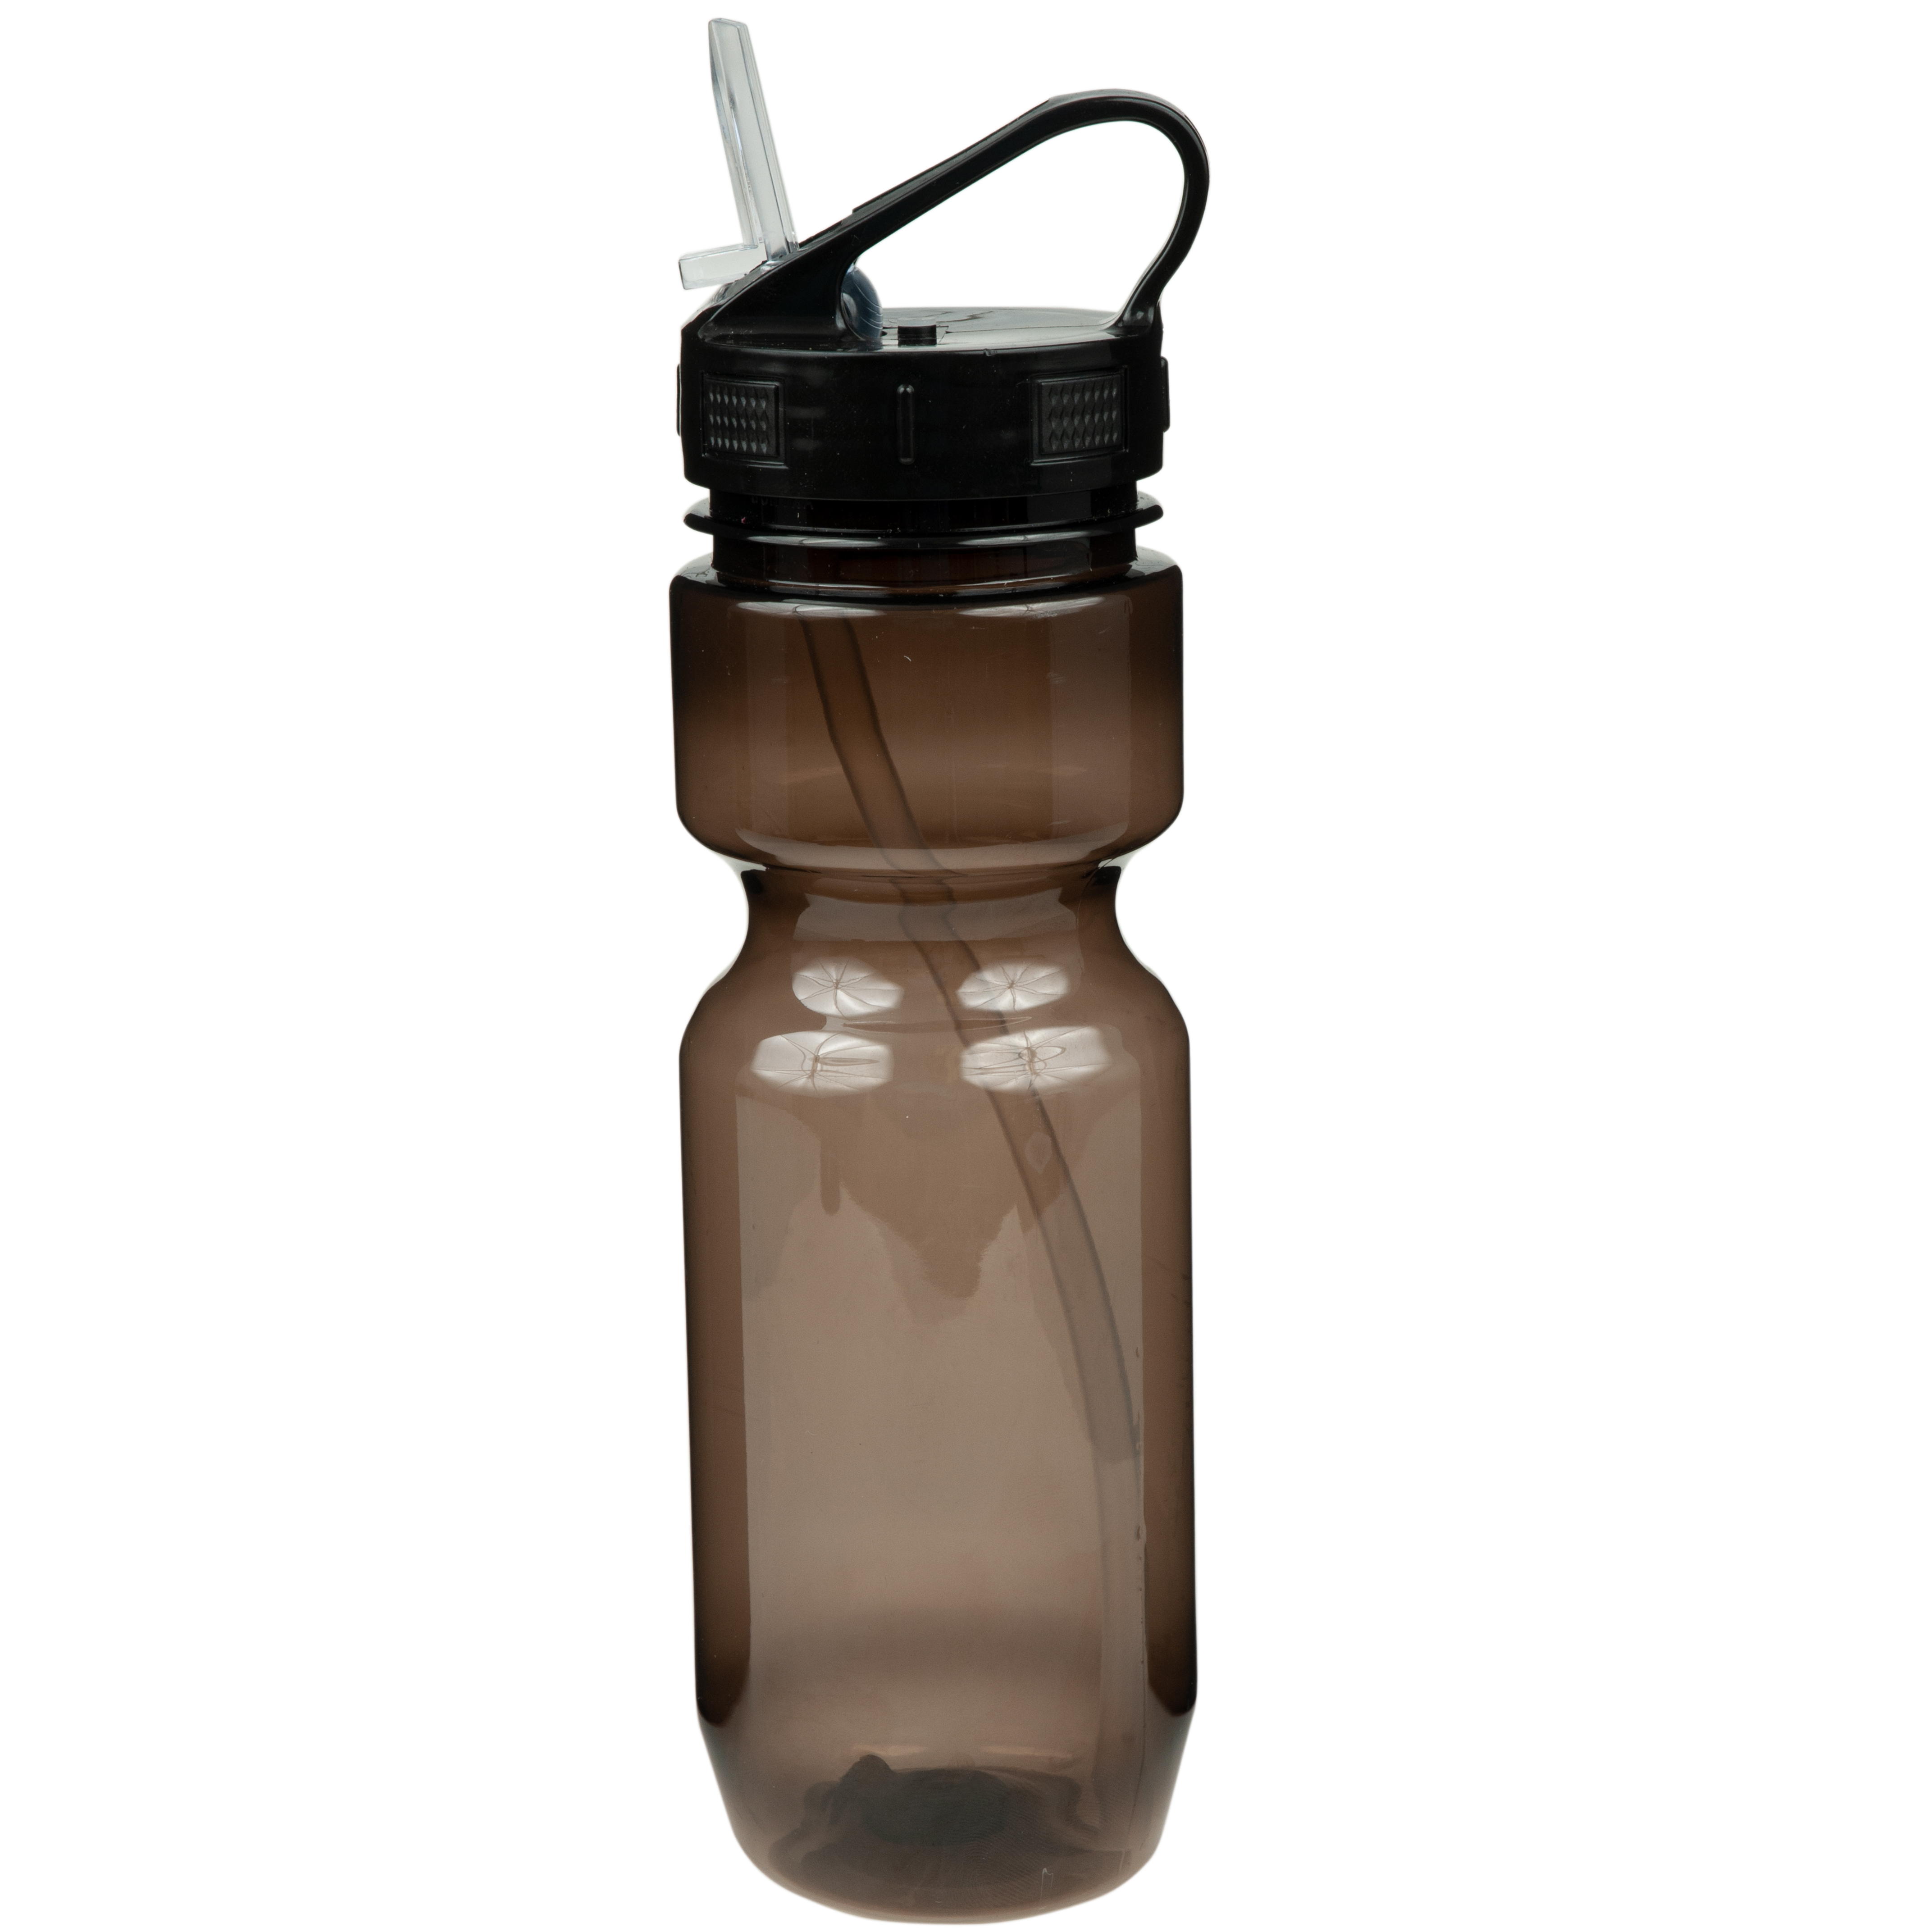 22oz BpA Free Sports Bottle Top Handle W/ Straw Black